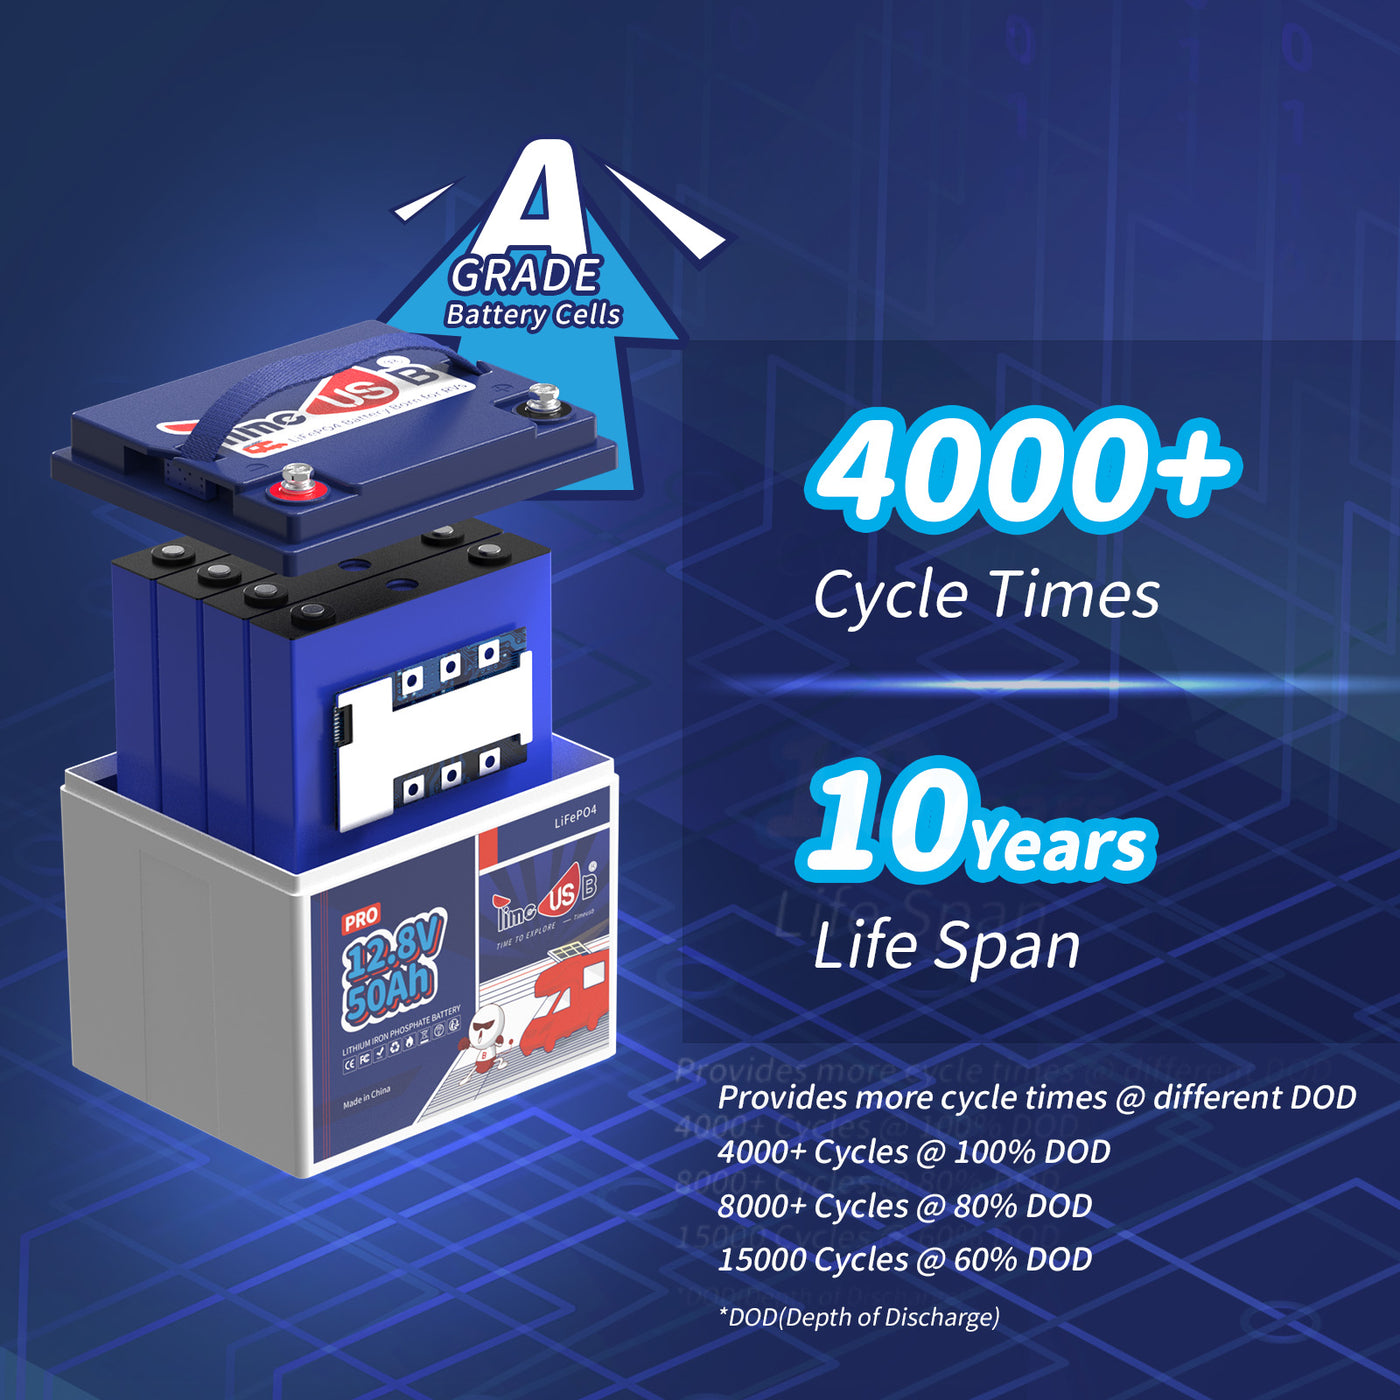 Ampere Time 12V 50Ah, 640Wh LiFePO4 Battery & Built – Amperetime-US